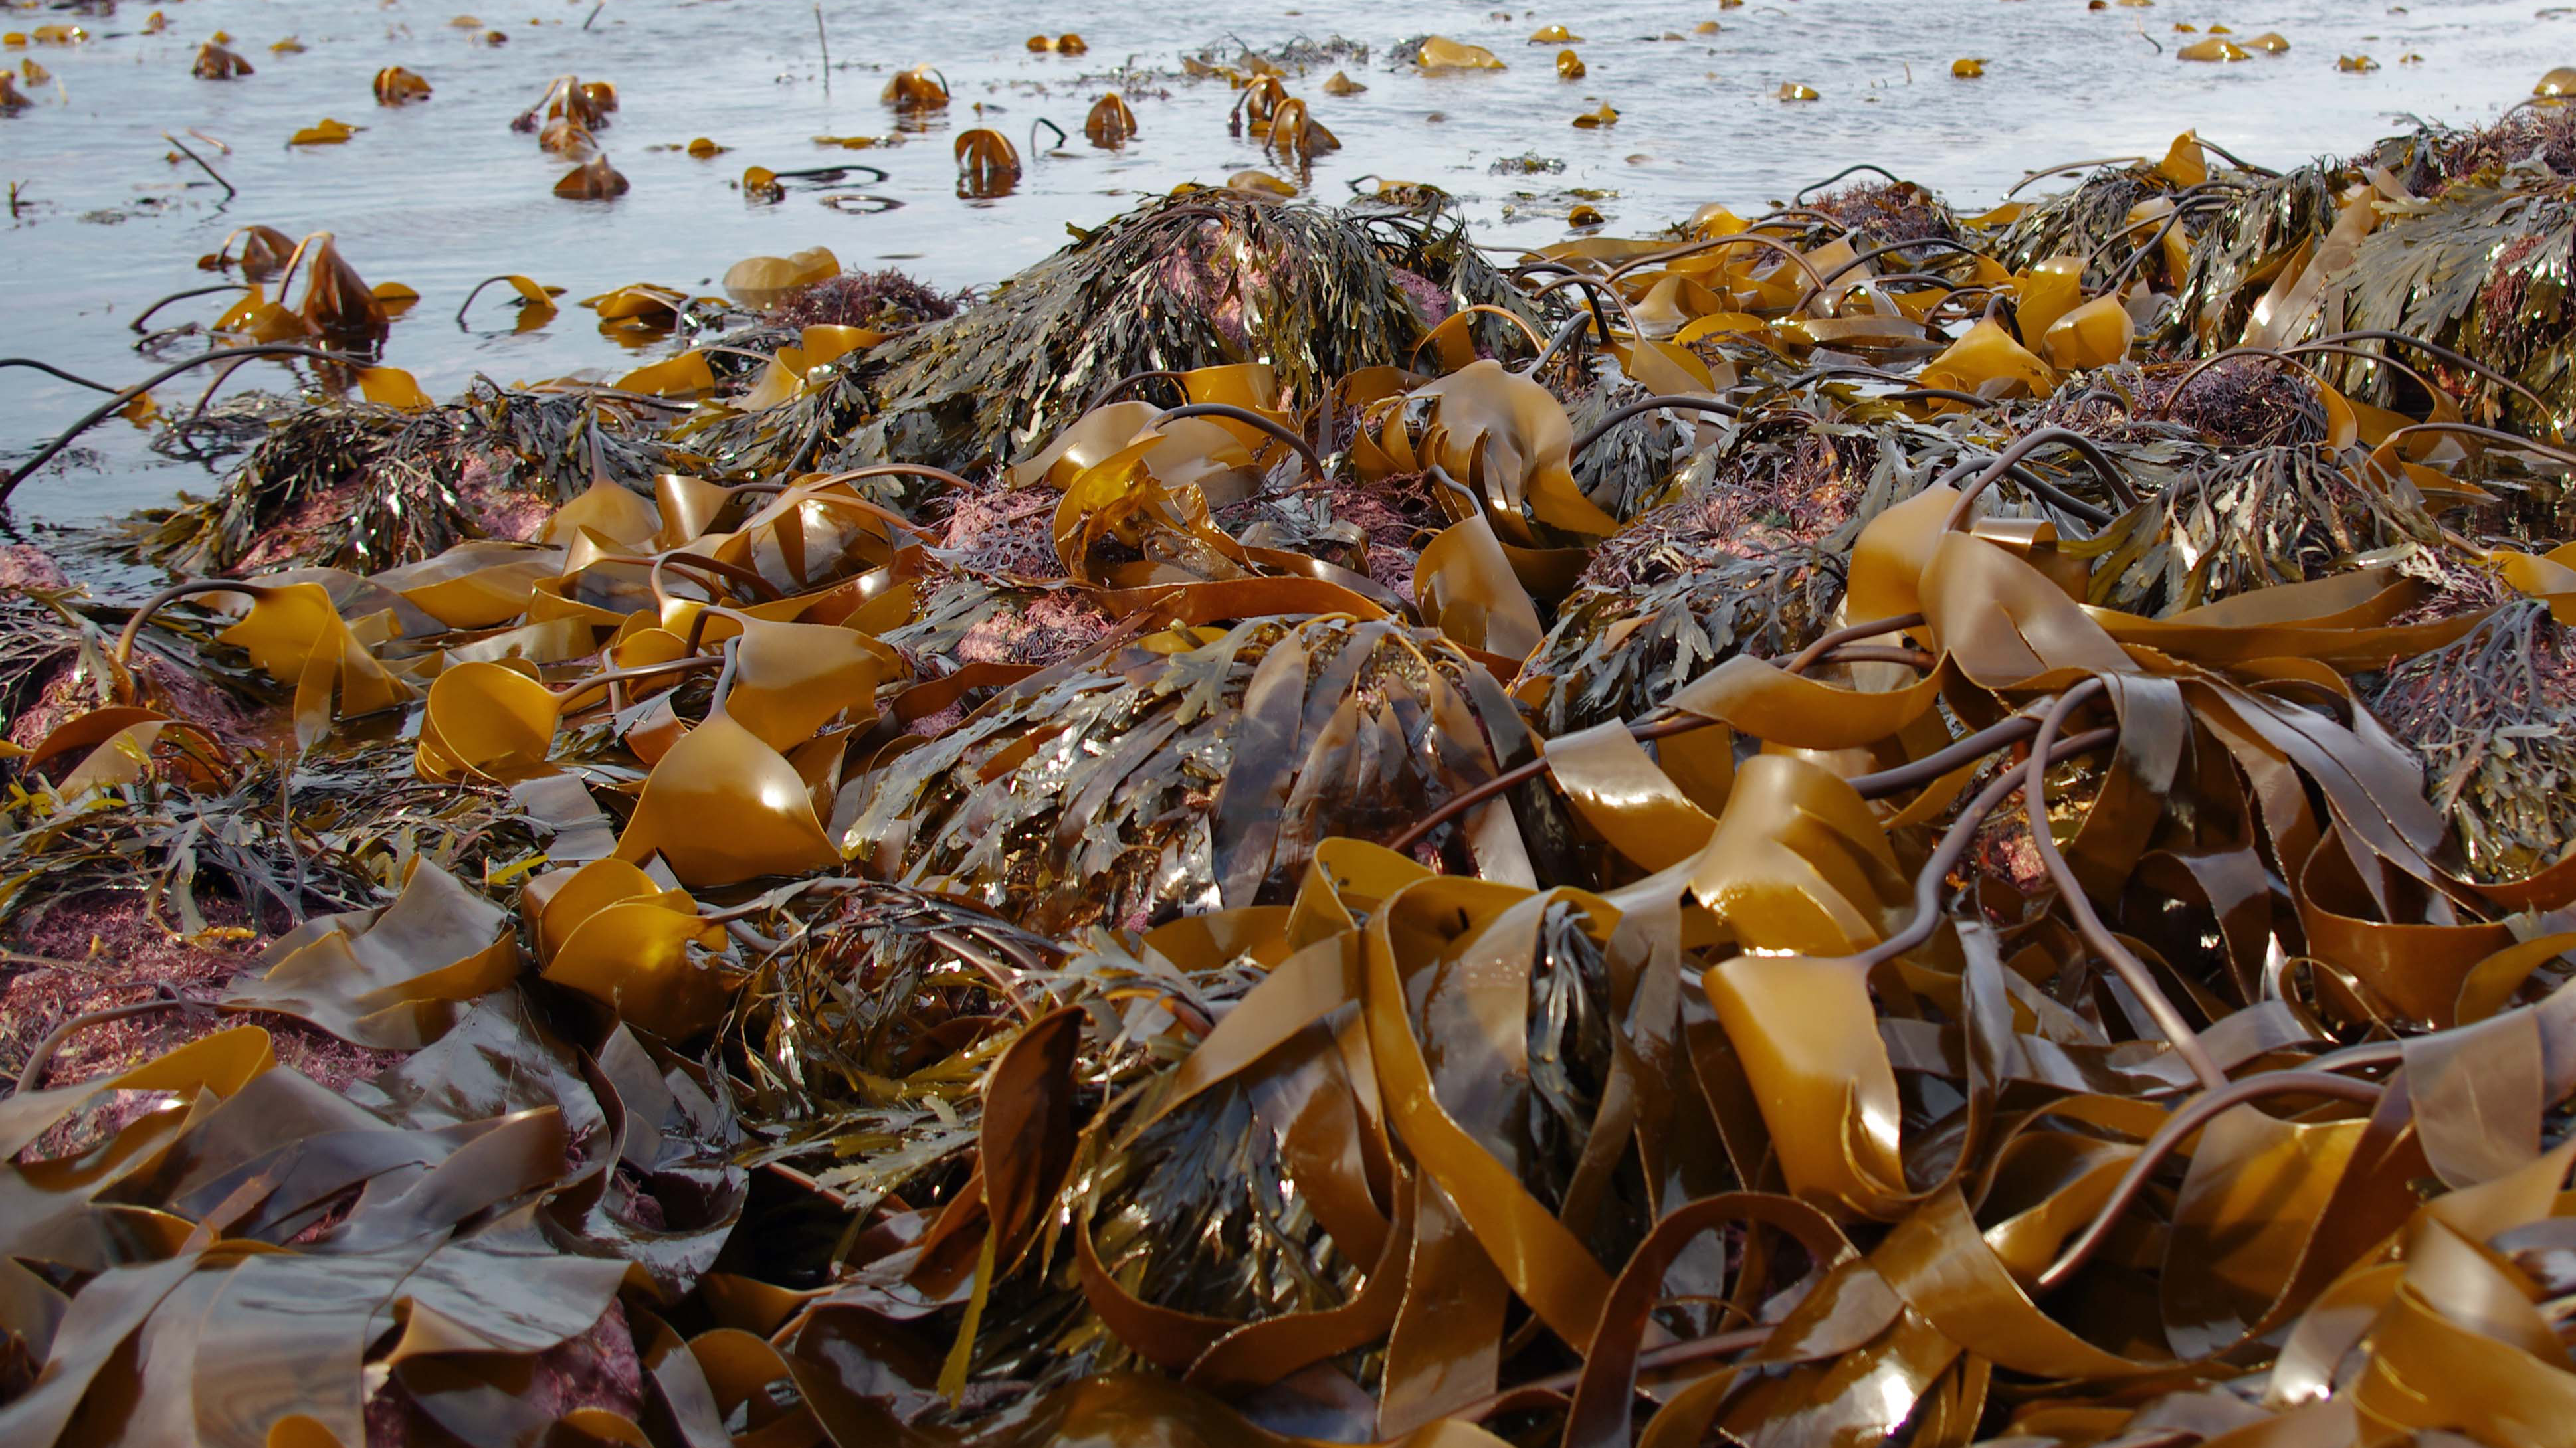 Япония заплатит России более 820 тысяч долларов за добычу морской капусты у Курил